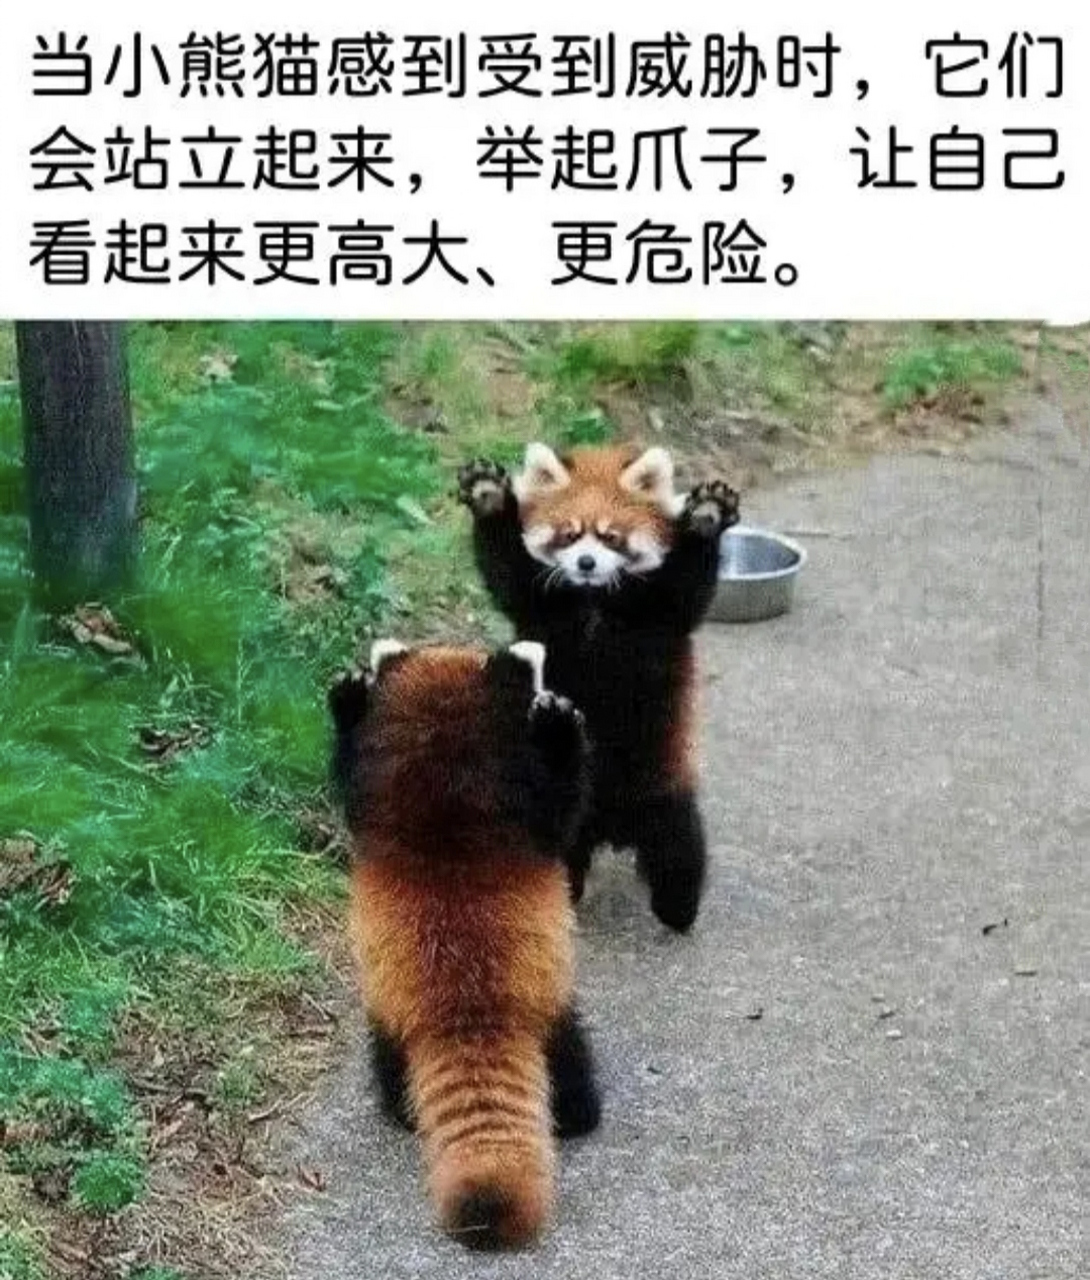 小熊猫举手投降图片